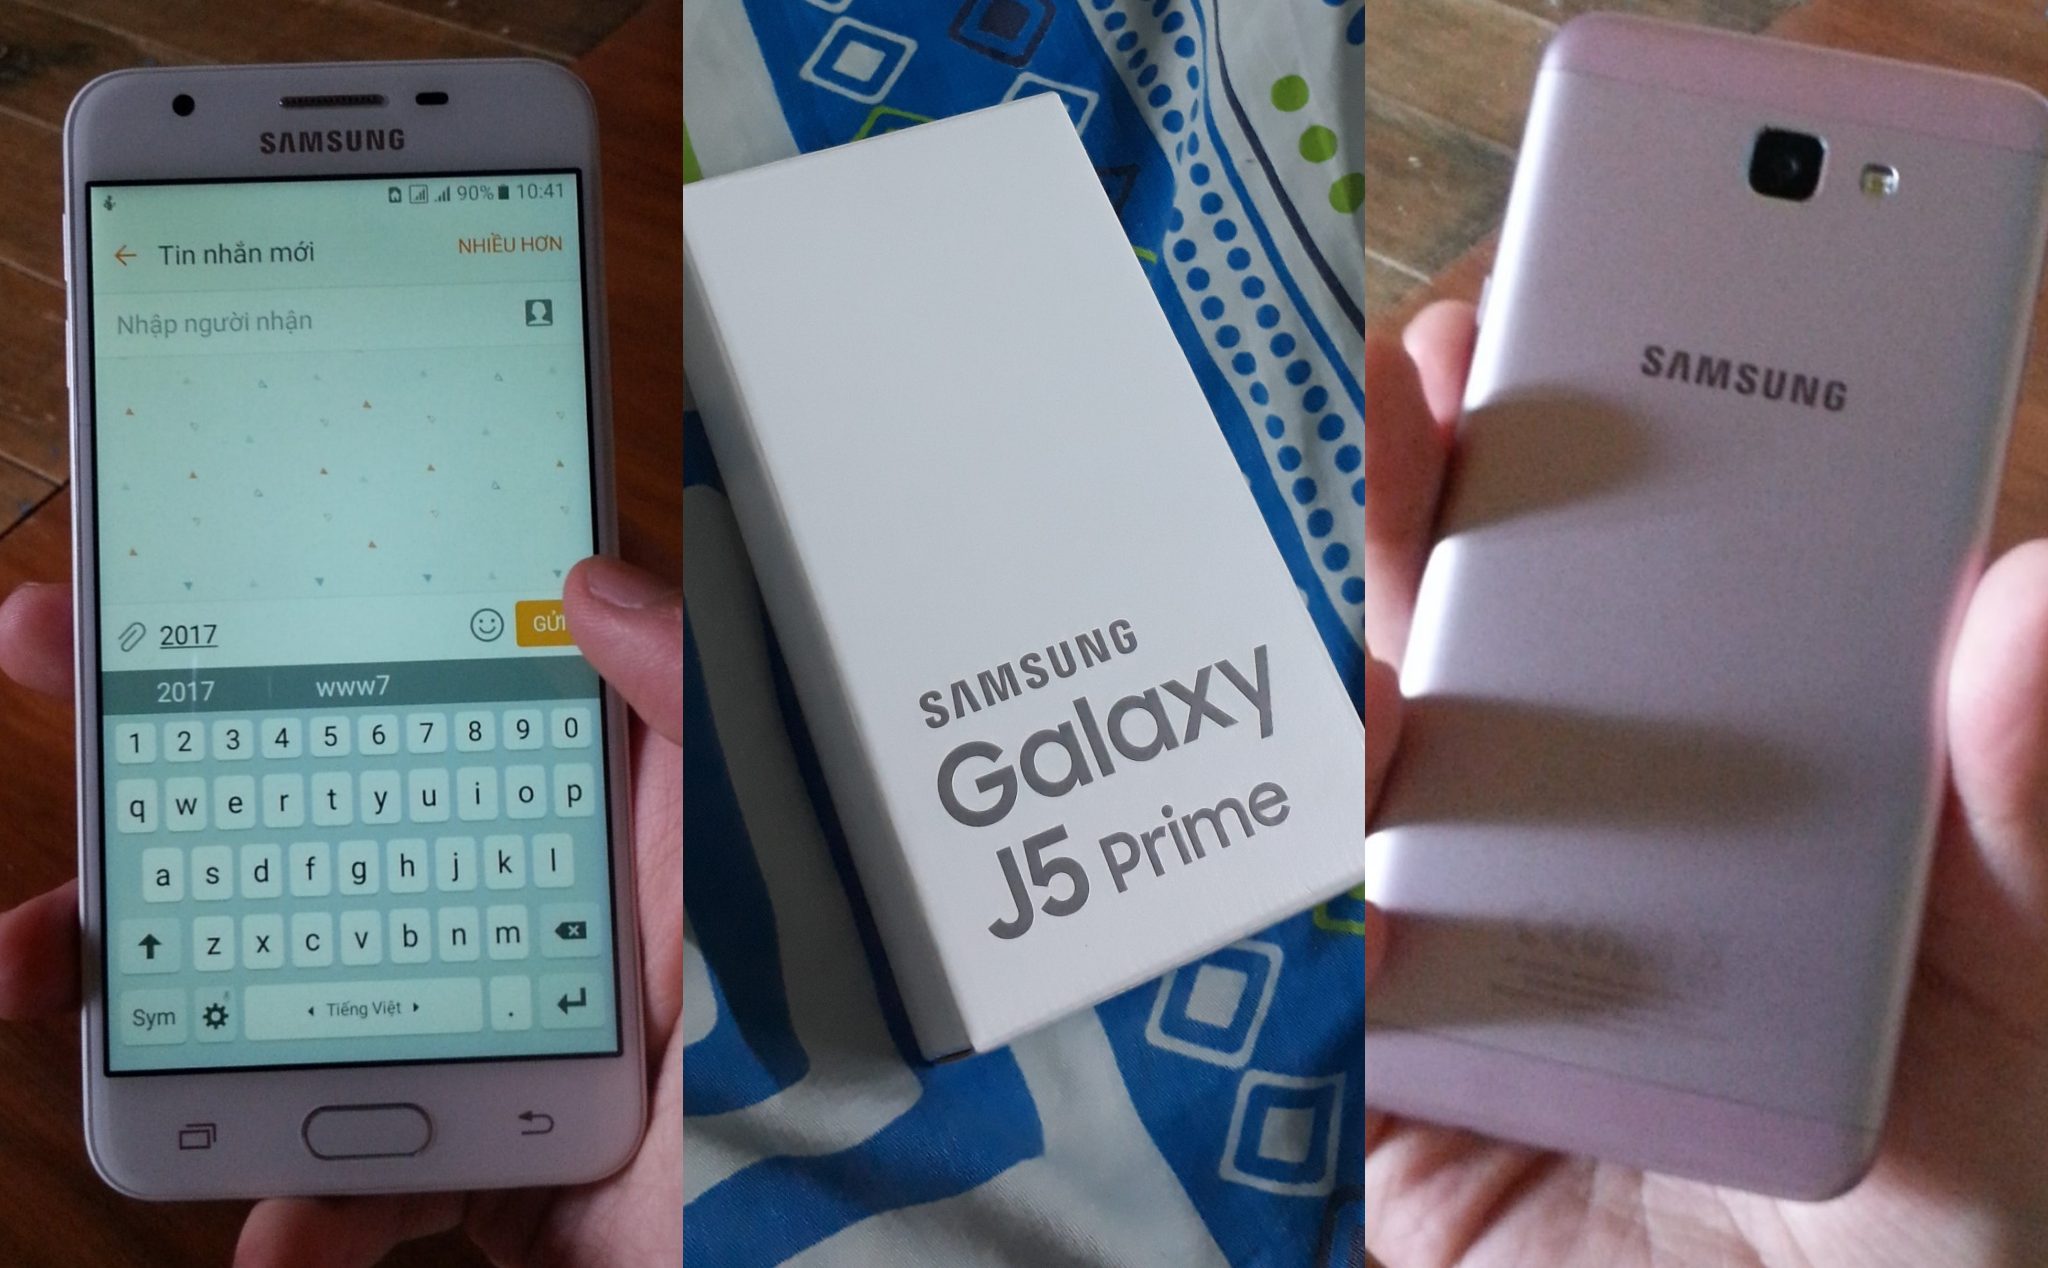 Tản mạn về điện thoại Samsung Galaxy J5 Prime sau 4 năm sử dụng - "Nó đã lỗi thời hay chưa?"